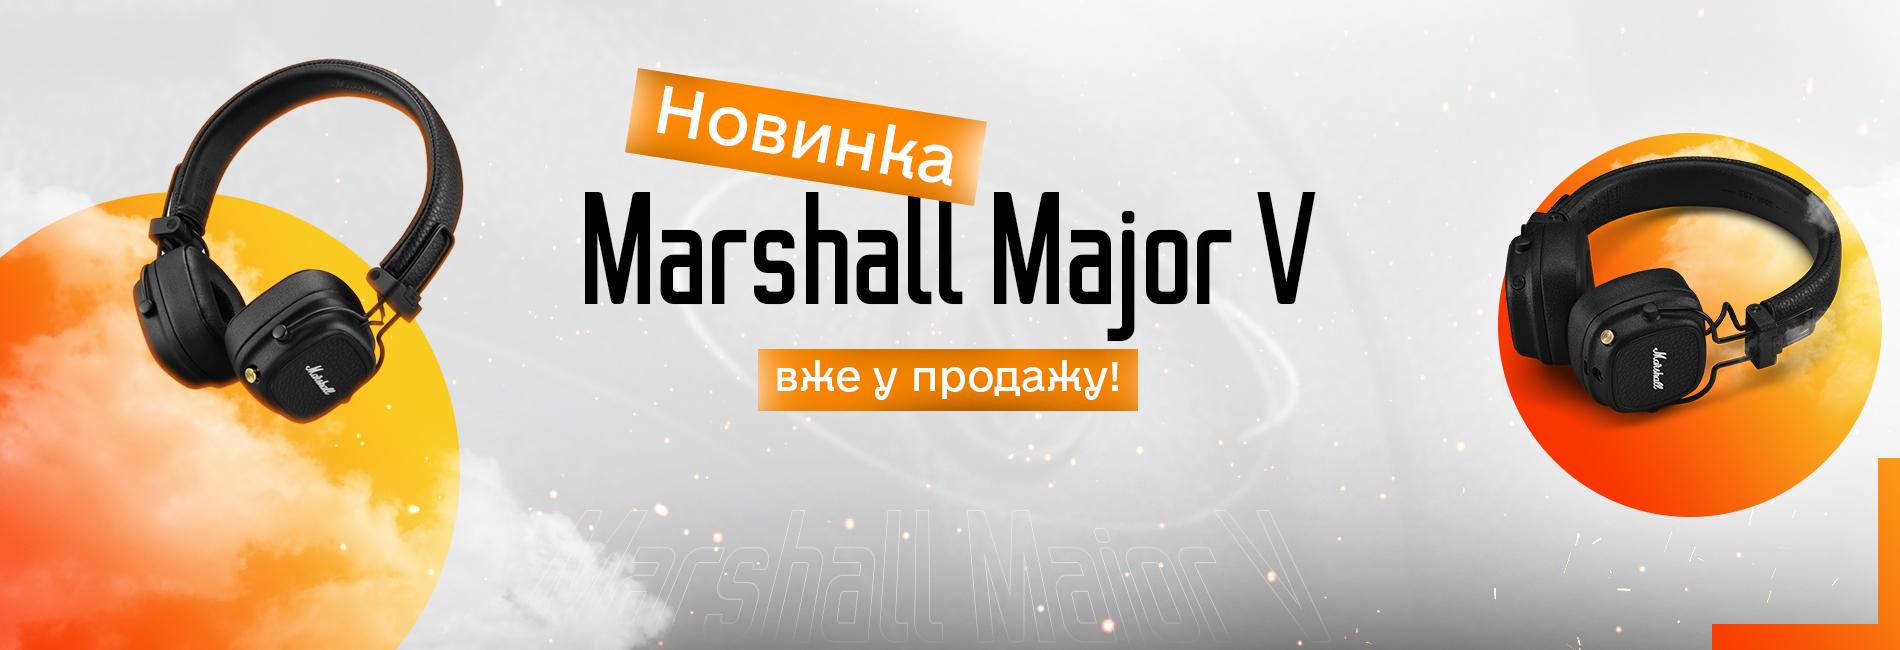 Marshall Major V